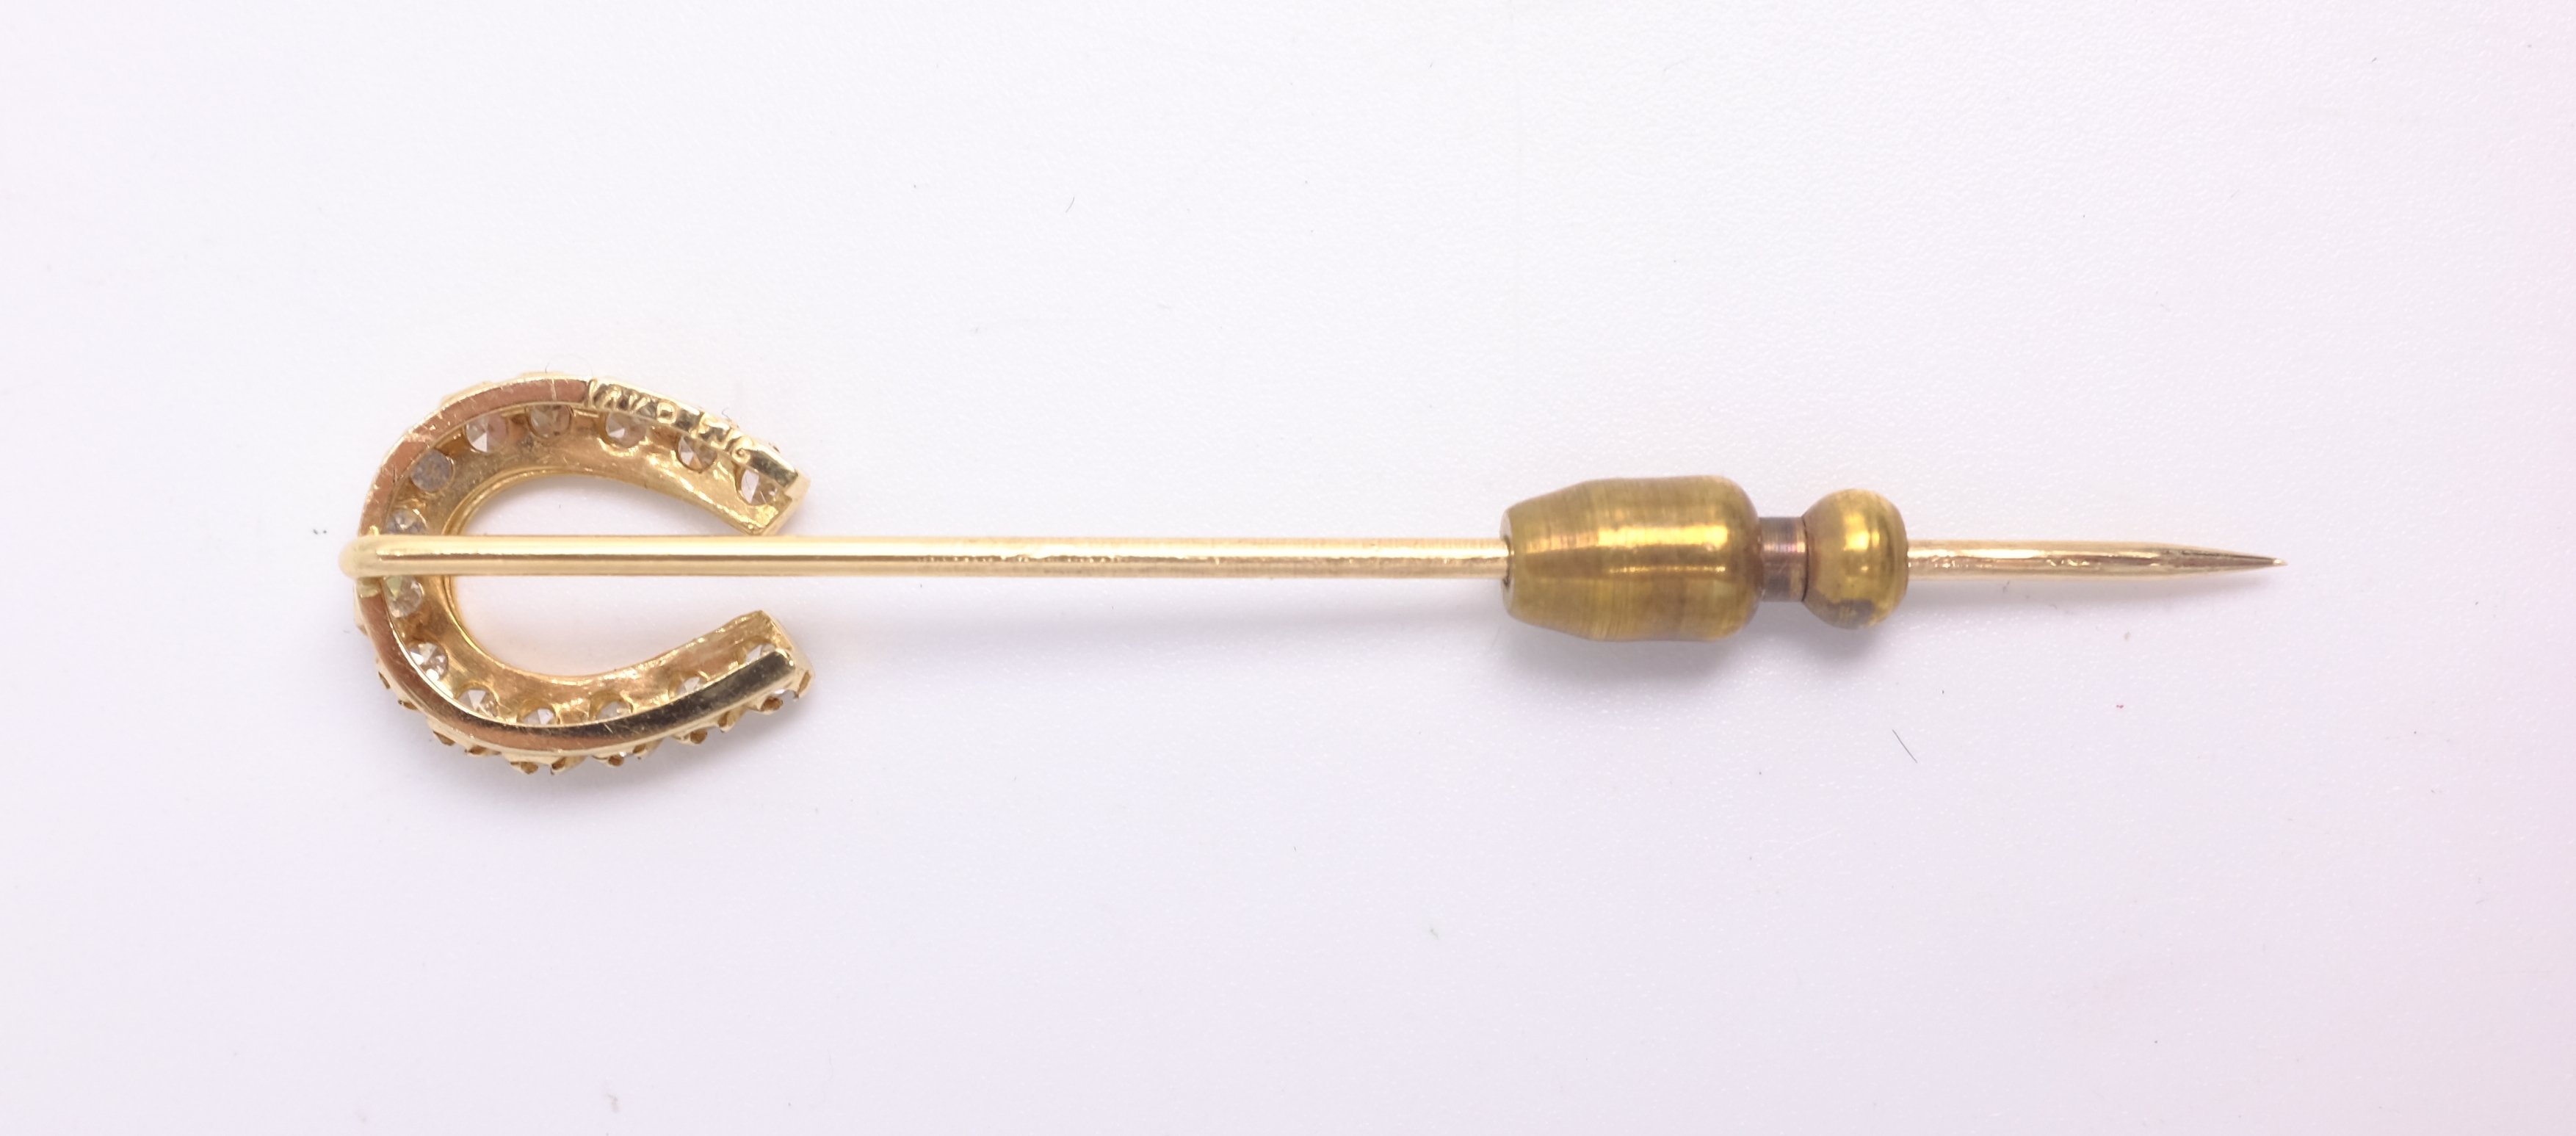 Diamond set gold horse shoe pin, stamped 14K - Image 3 of 3